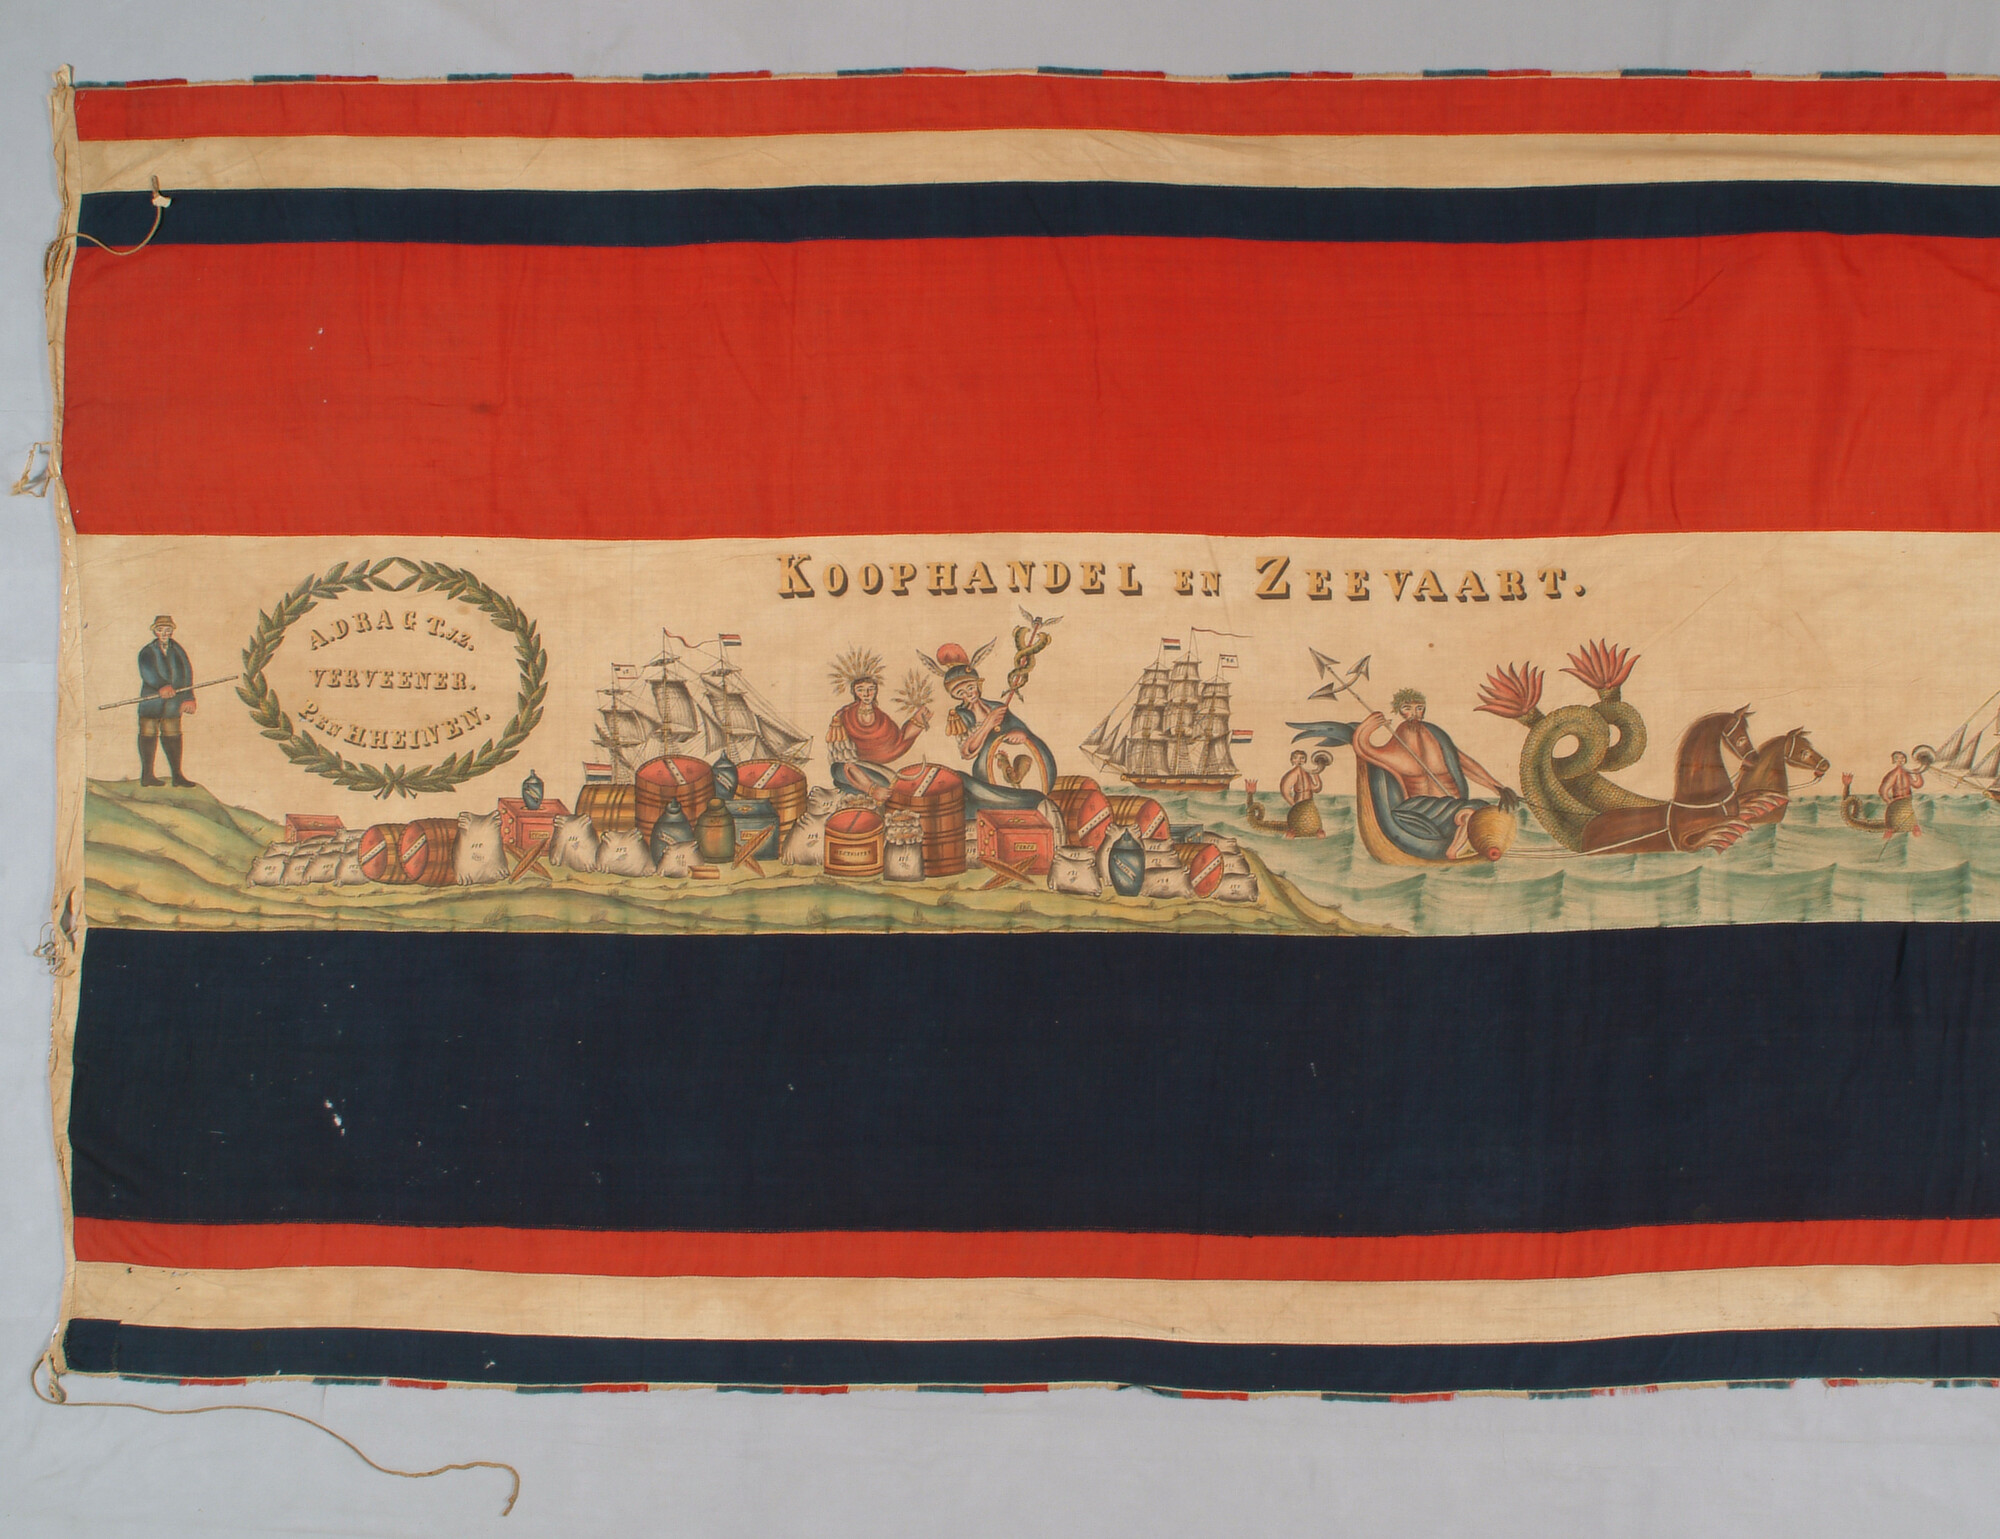 A.1346; Feestvlag met zinnebeeldige voorstelling van landbouw, koophandel en zeevaart; vlag